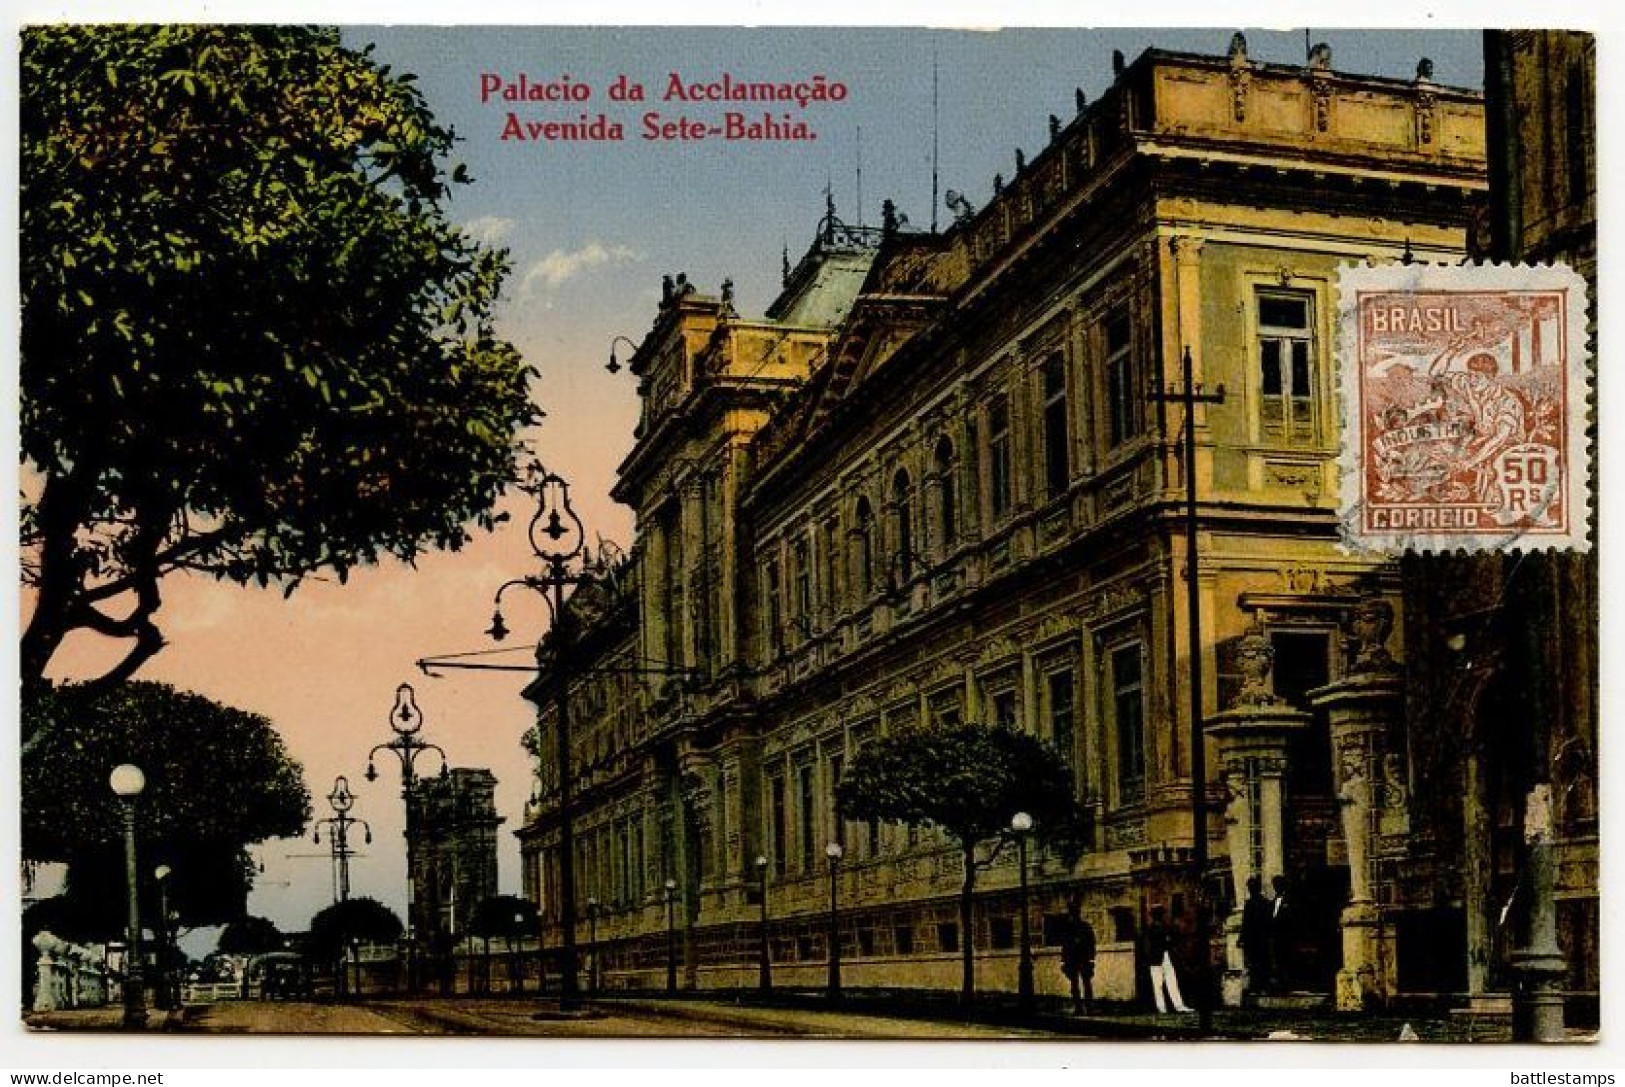 Brazil 1926 Postcard Bahia - Palacio Da Acclamação, Avenida Sete-Bahia; 50r. "Industry" Stamp - Salvador De Bahia